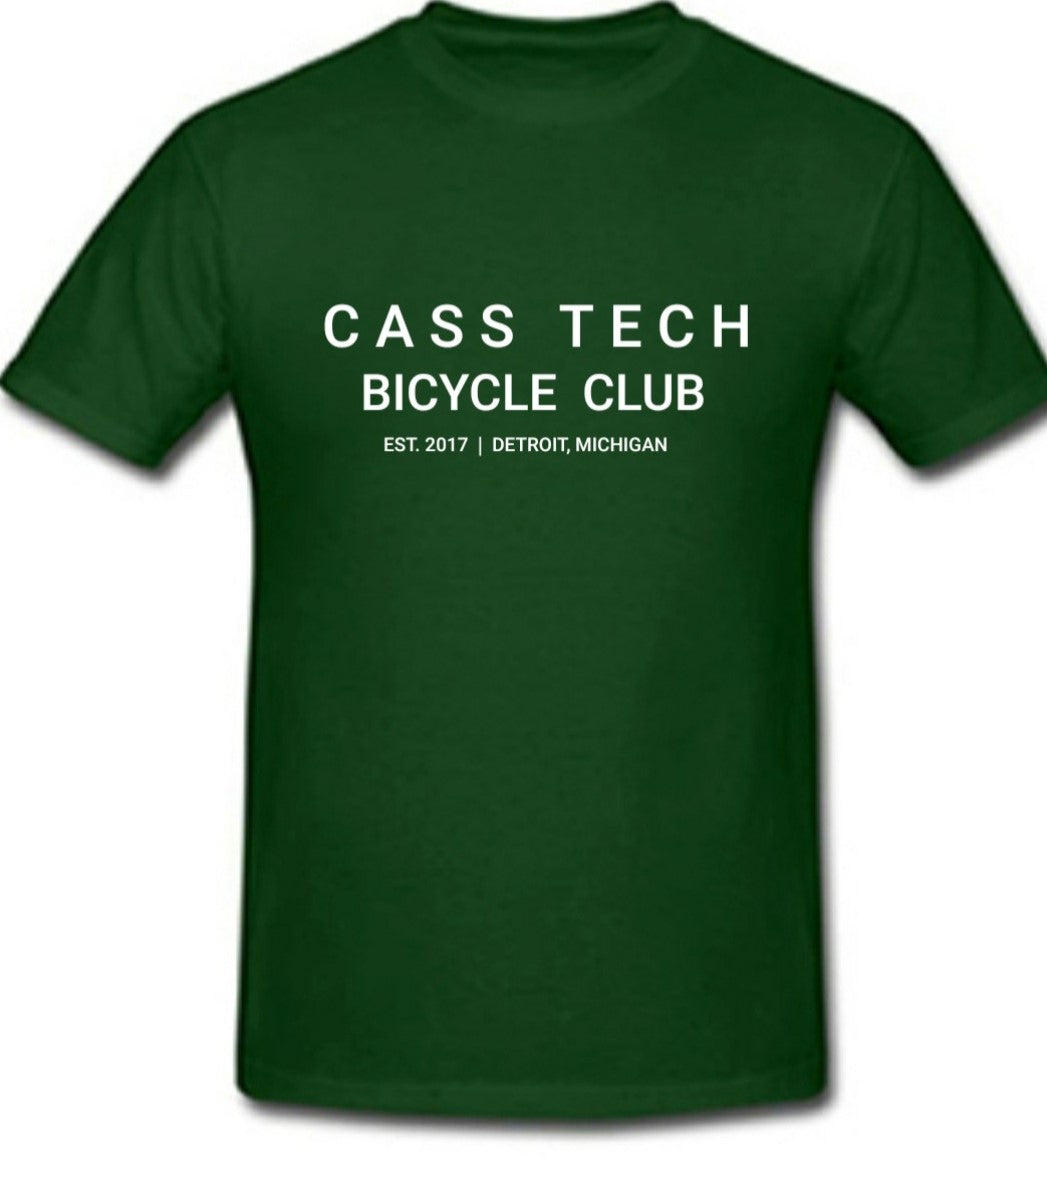 Cass Tech Bicycle Club T-shirt